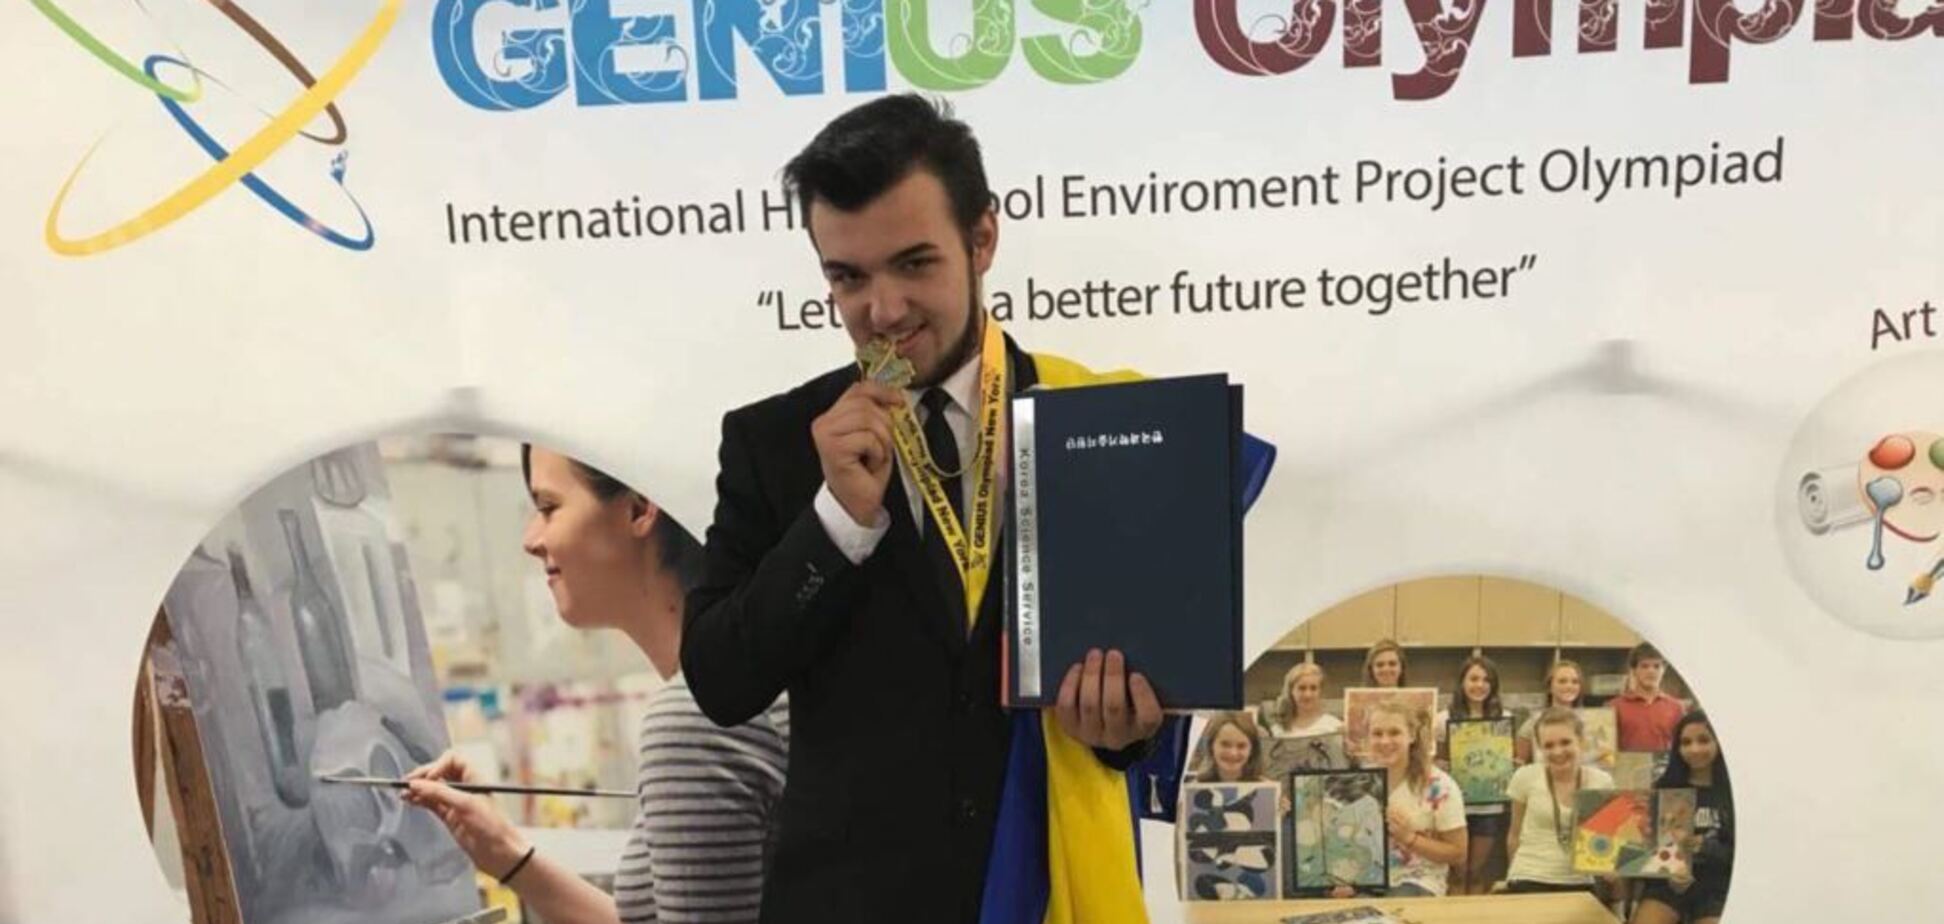 Визнали генієм: український школяр вразив США